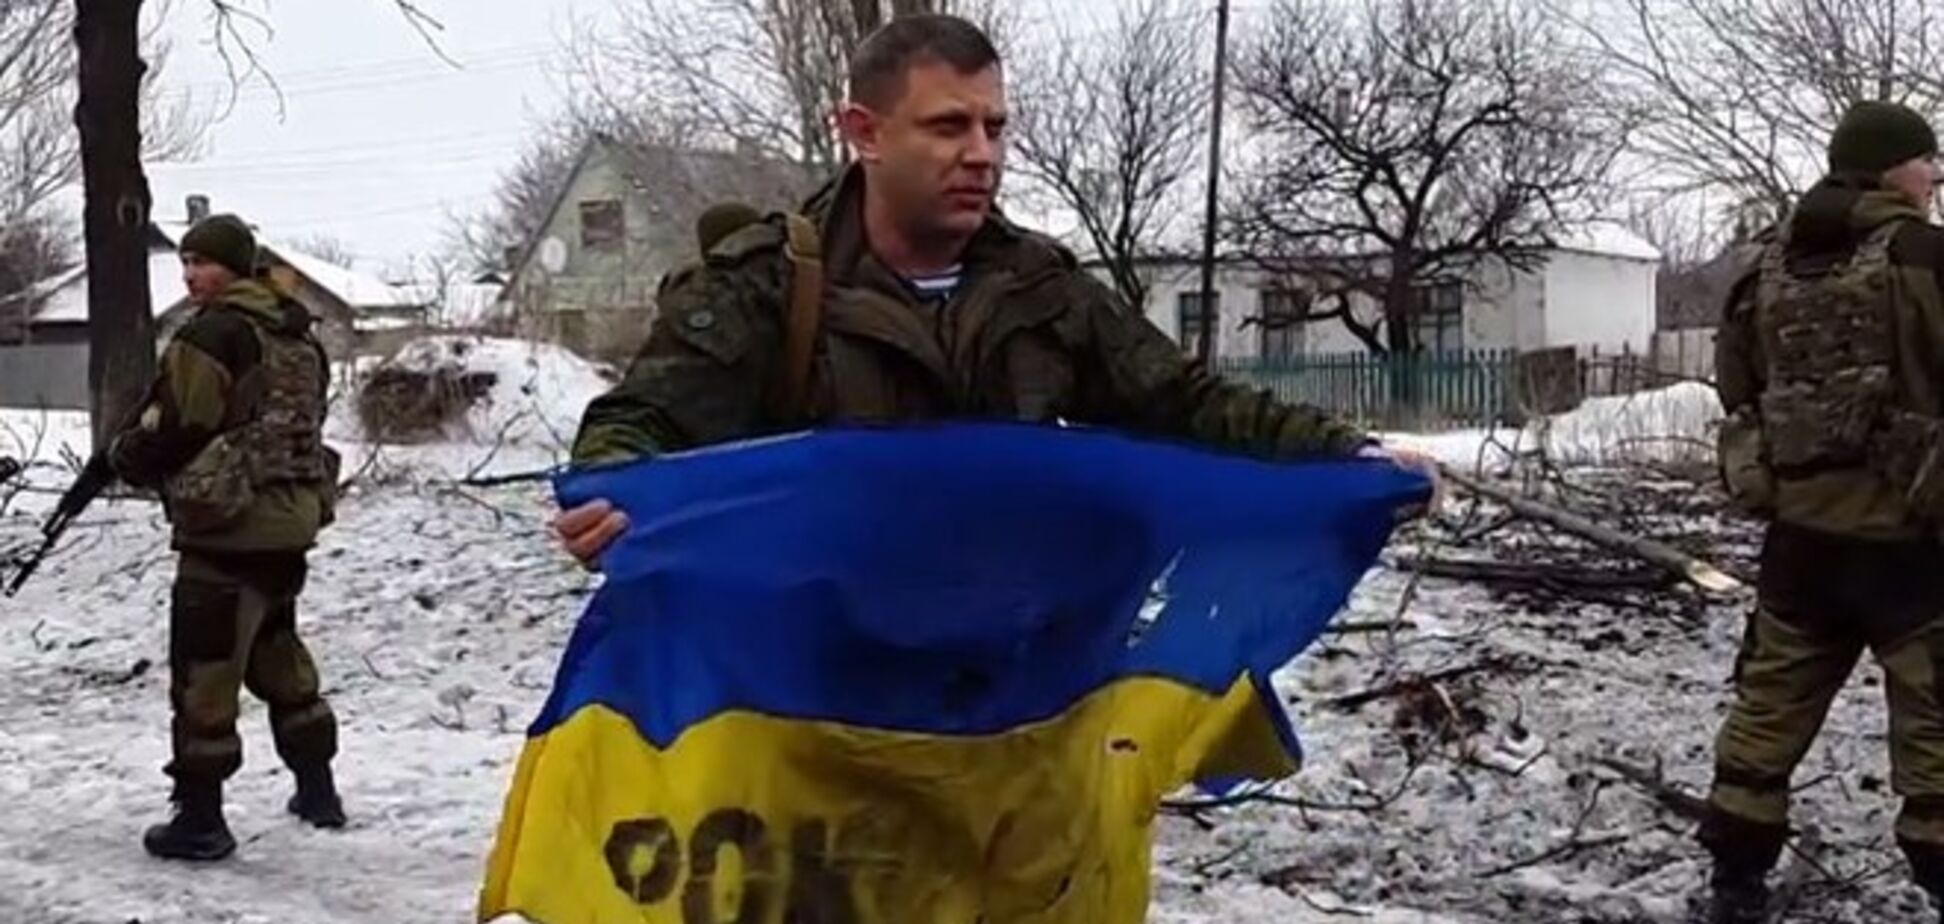 Захарченко заявил о захвате украинского флага 'киборгов' и решил отдать его Порошенко: опубликовано видео